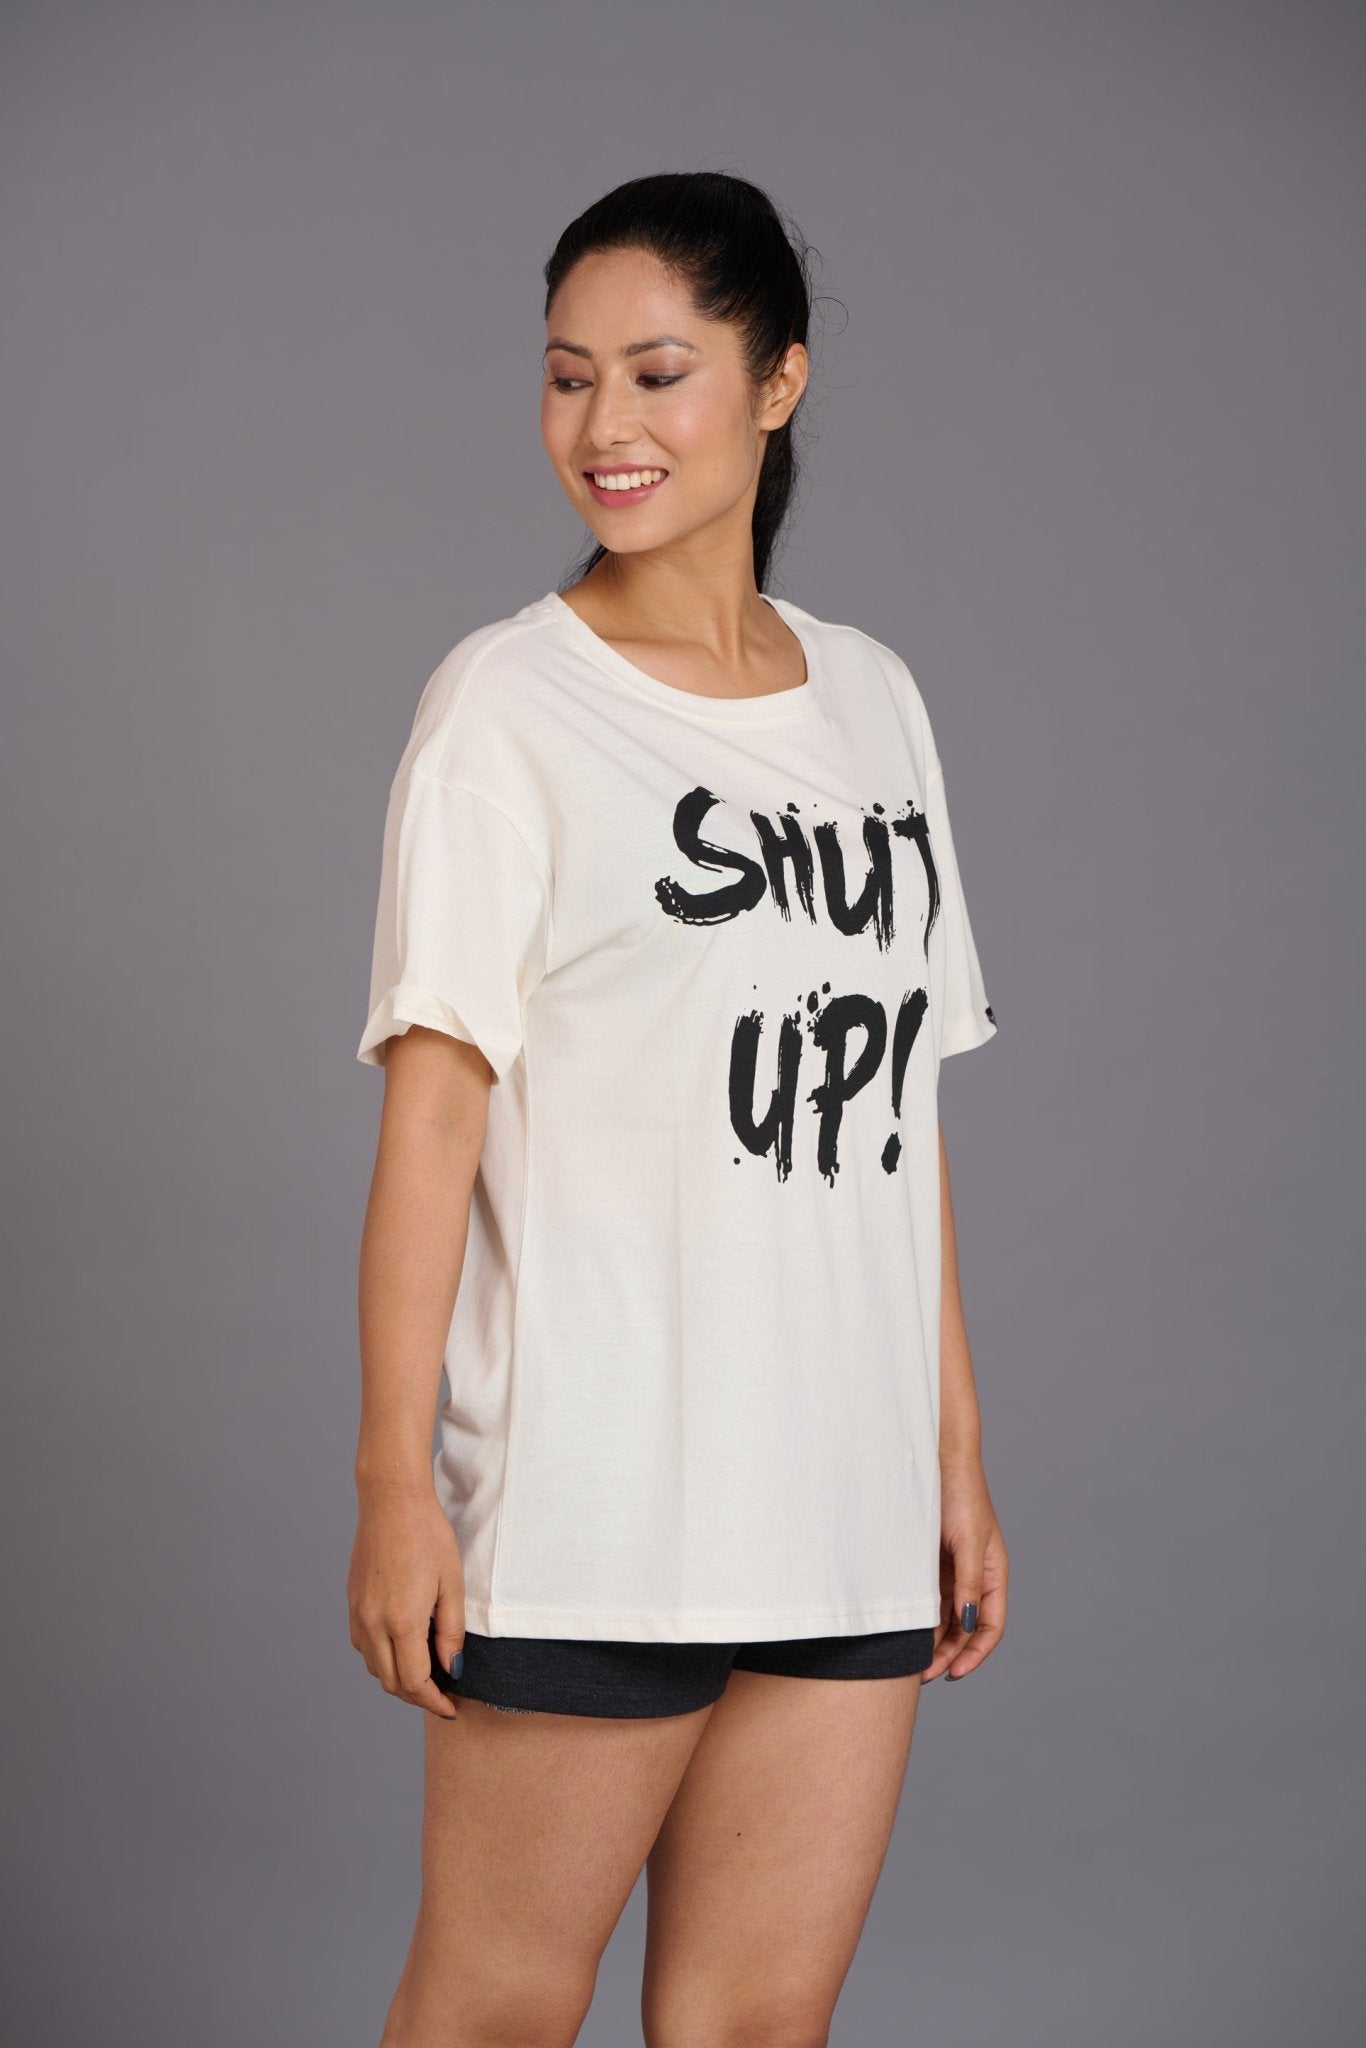 Shut Up Printed Ivory Oversized T-Shirt for Women - Go Devil